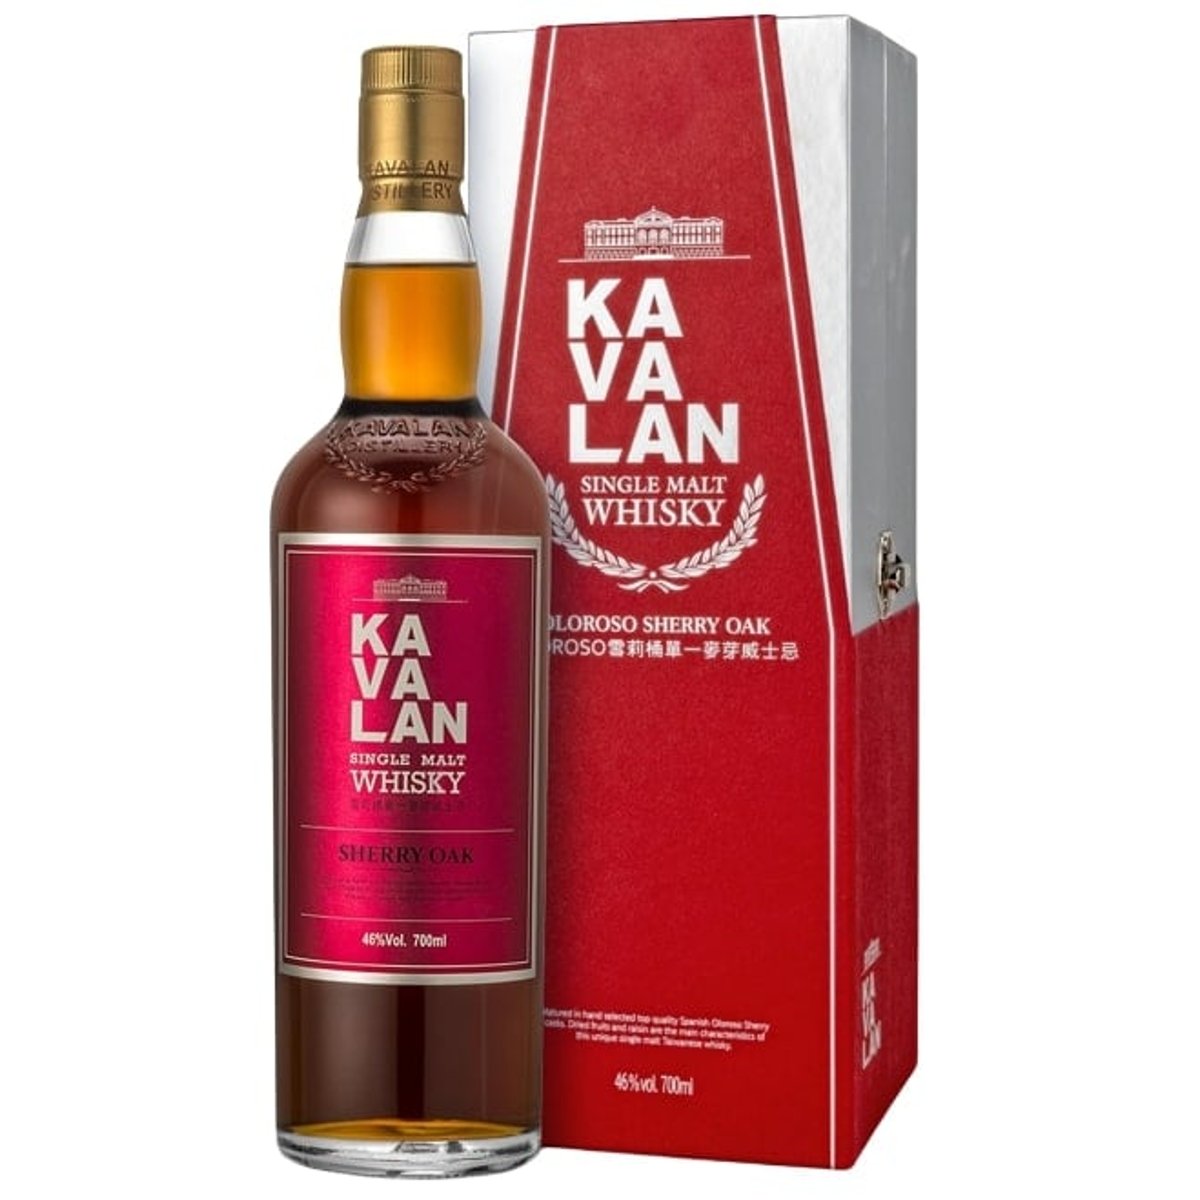 Kavalan Sherry cask whisky 46%